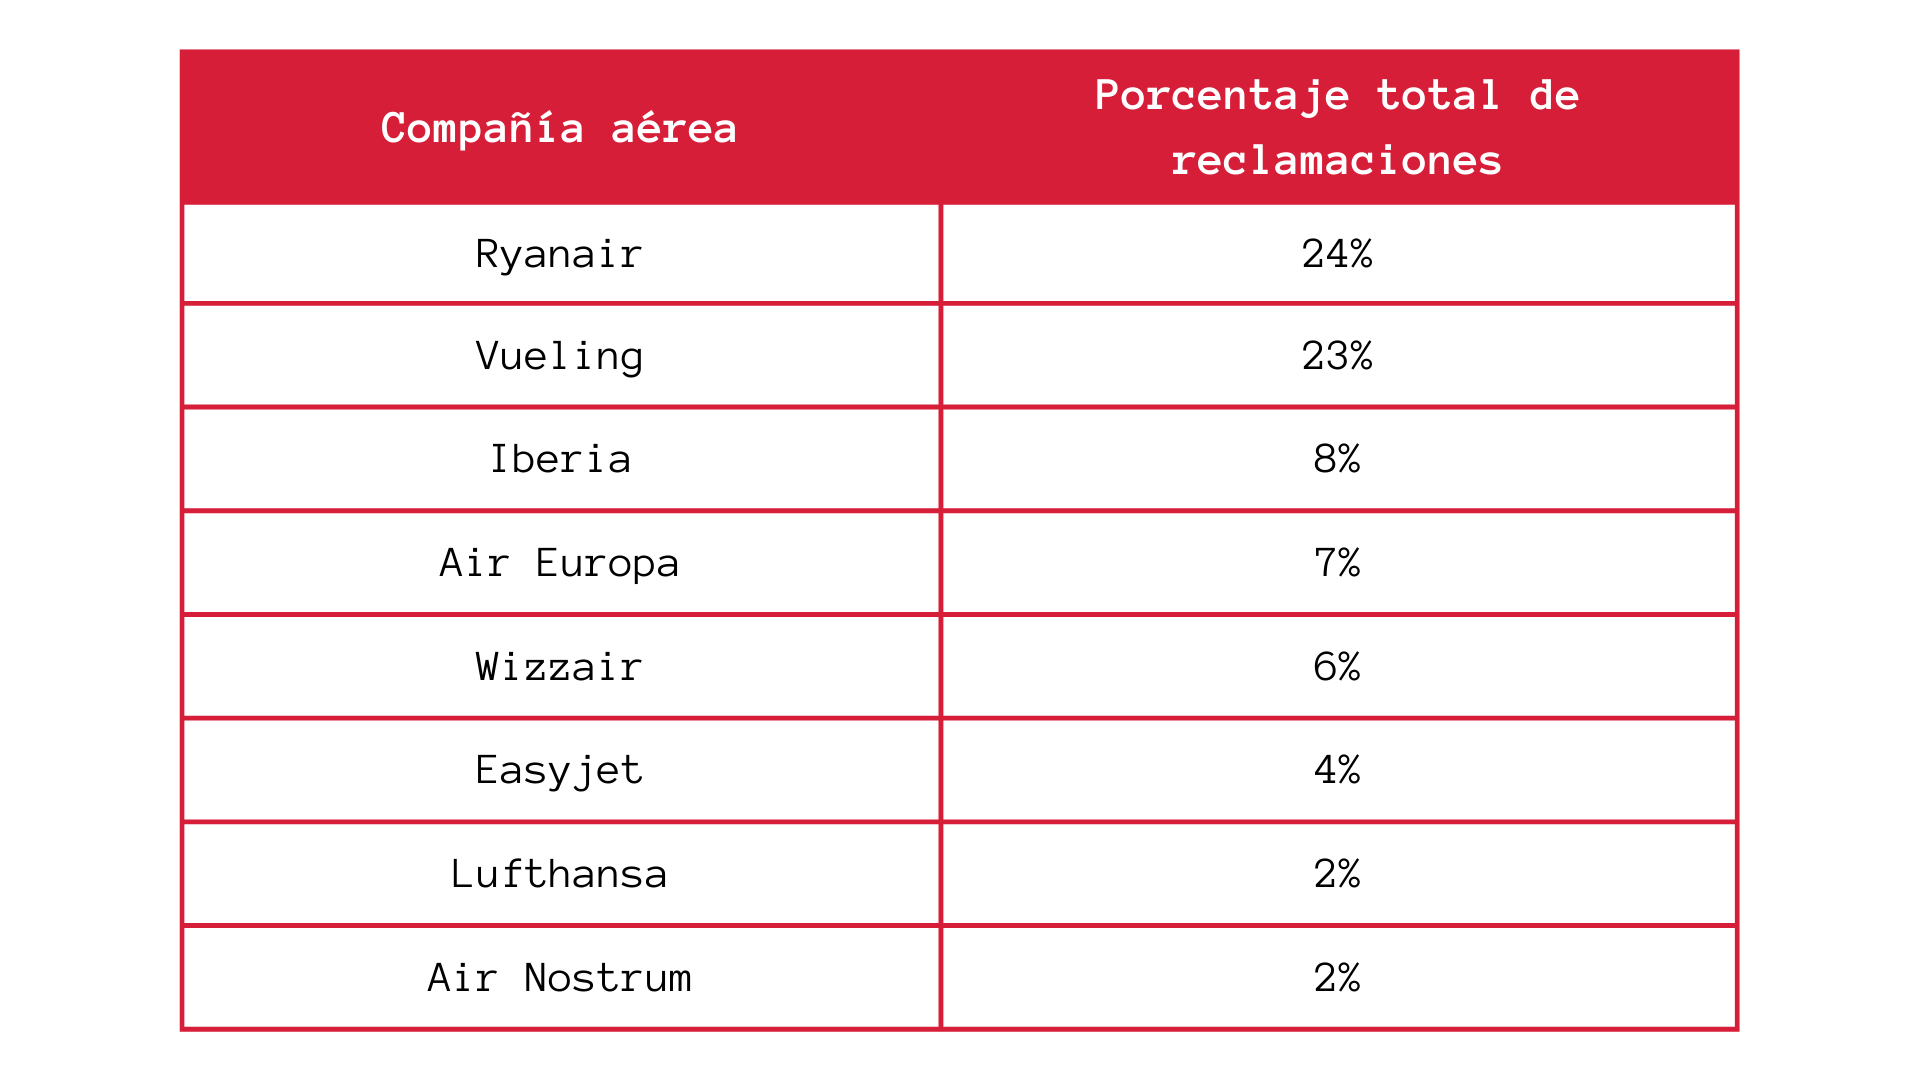 Tabla sobre porcentaje de reclamaciones an aerolíneas